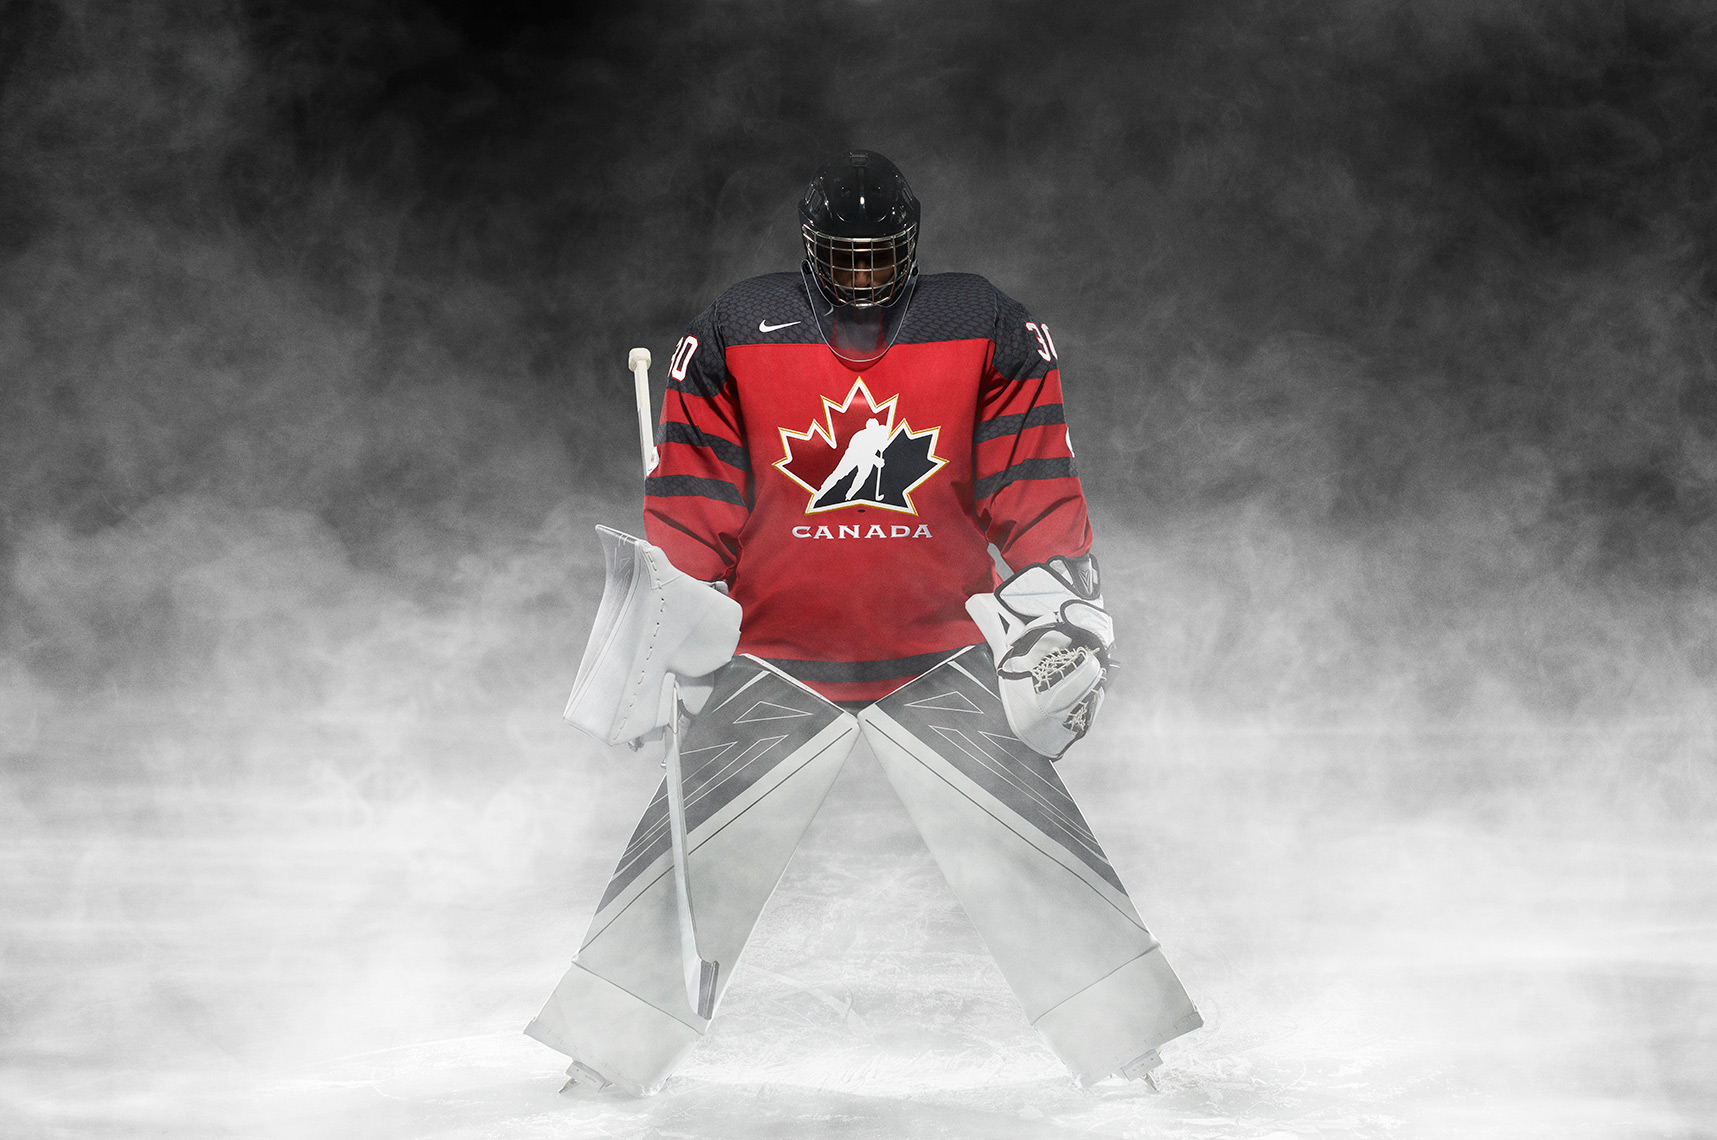 2016/17 Team Canada Hockey Jersey